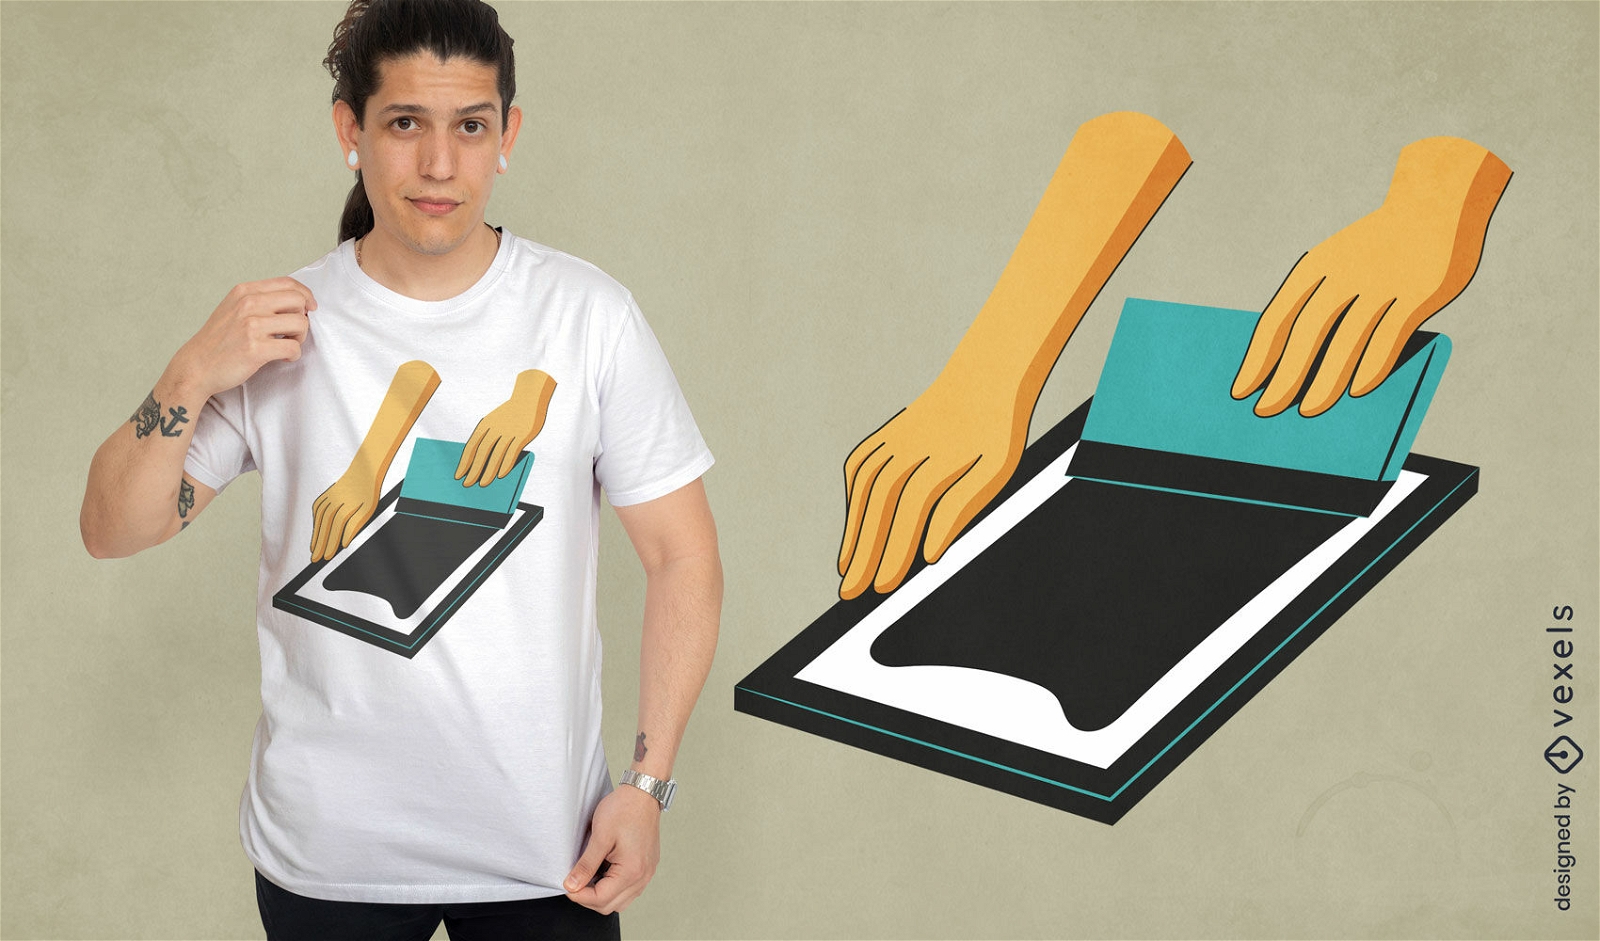 Hands screen painting t-shirt design